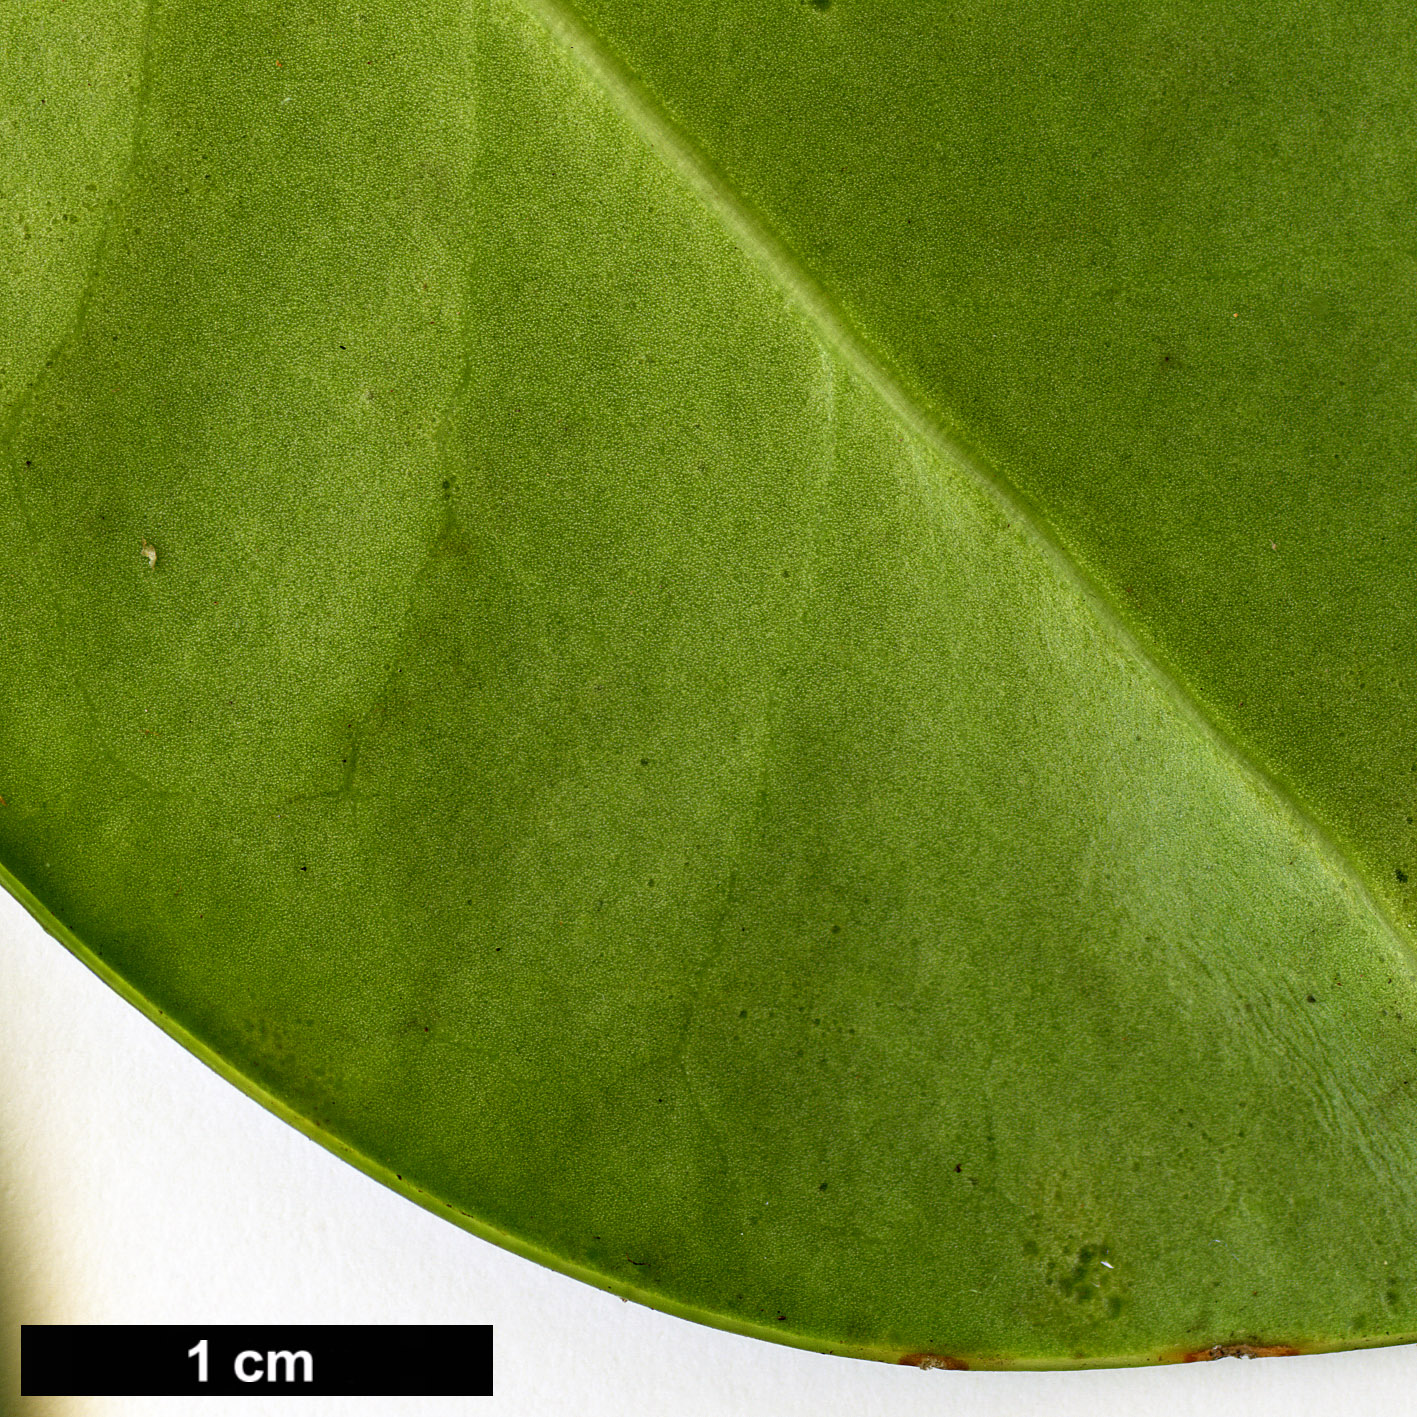 High resolution image: Family: Aquifoliaceae - Genus: Ilex - Taxon: perado - SpeciesSub: subsp. perado